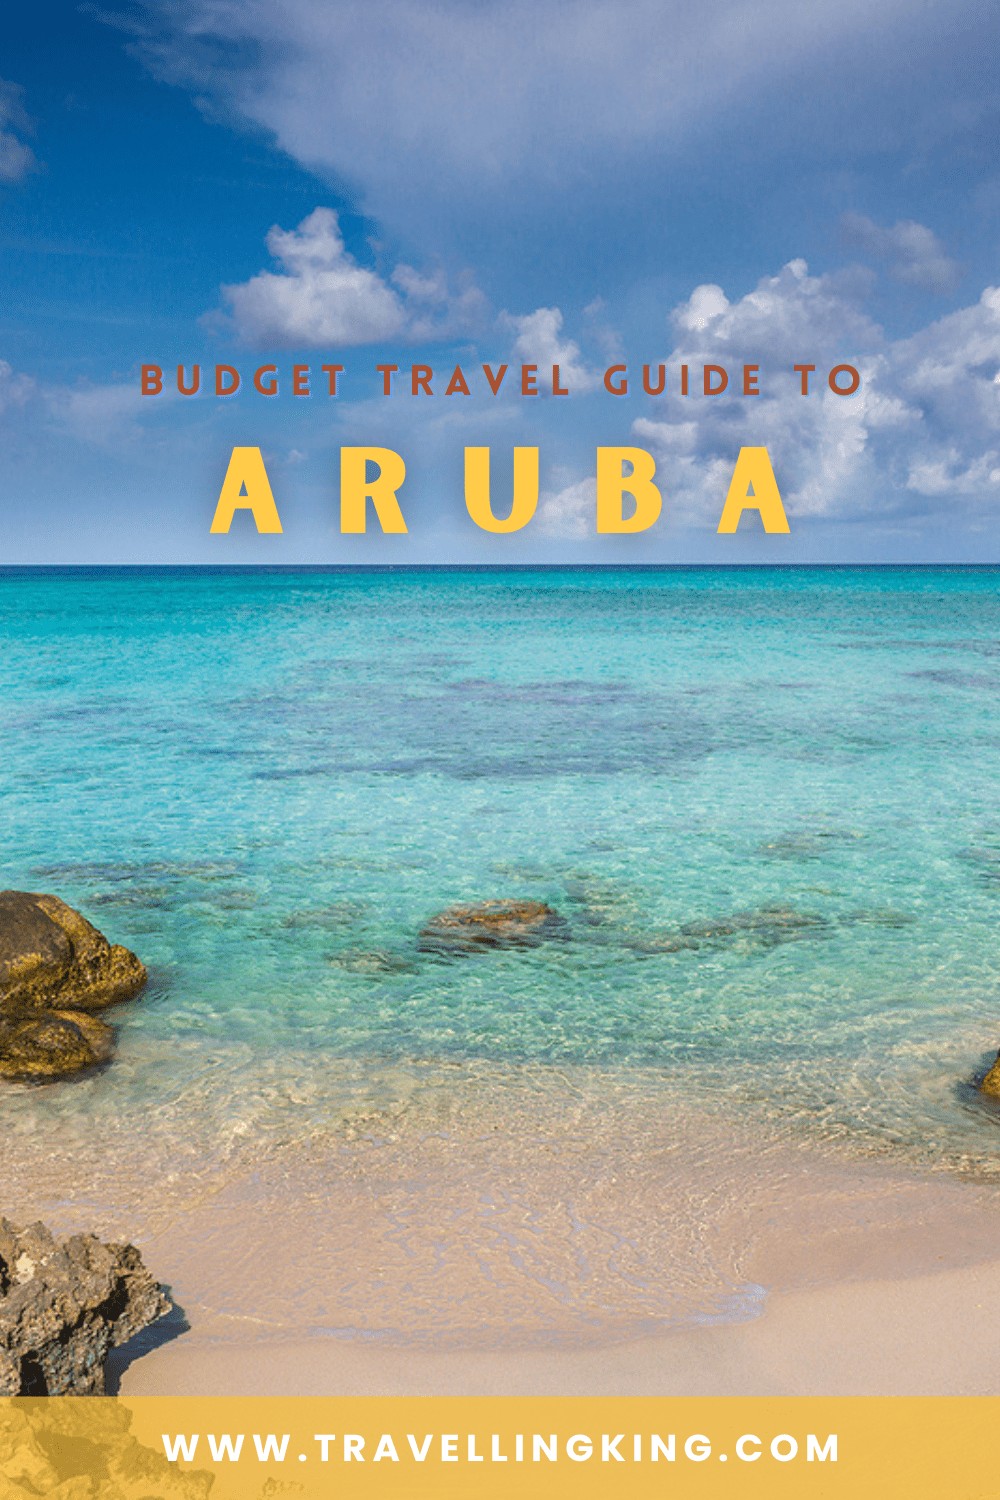 Budget Travel Guide to Aruba